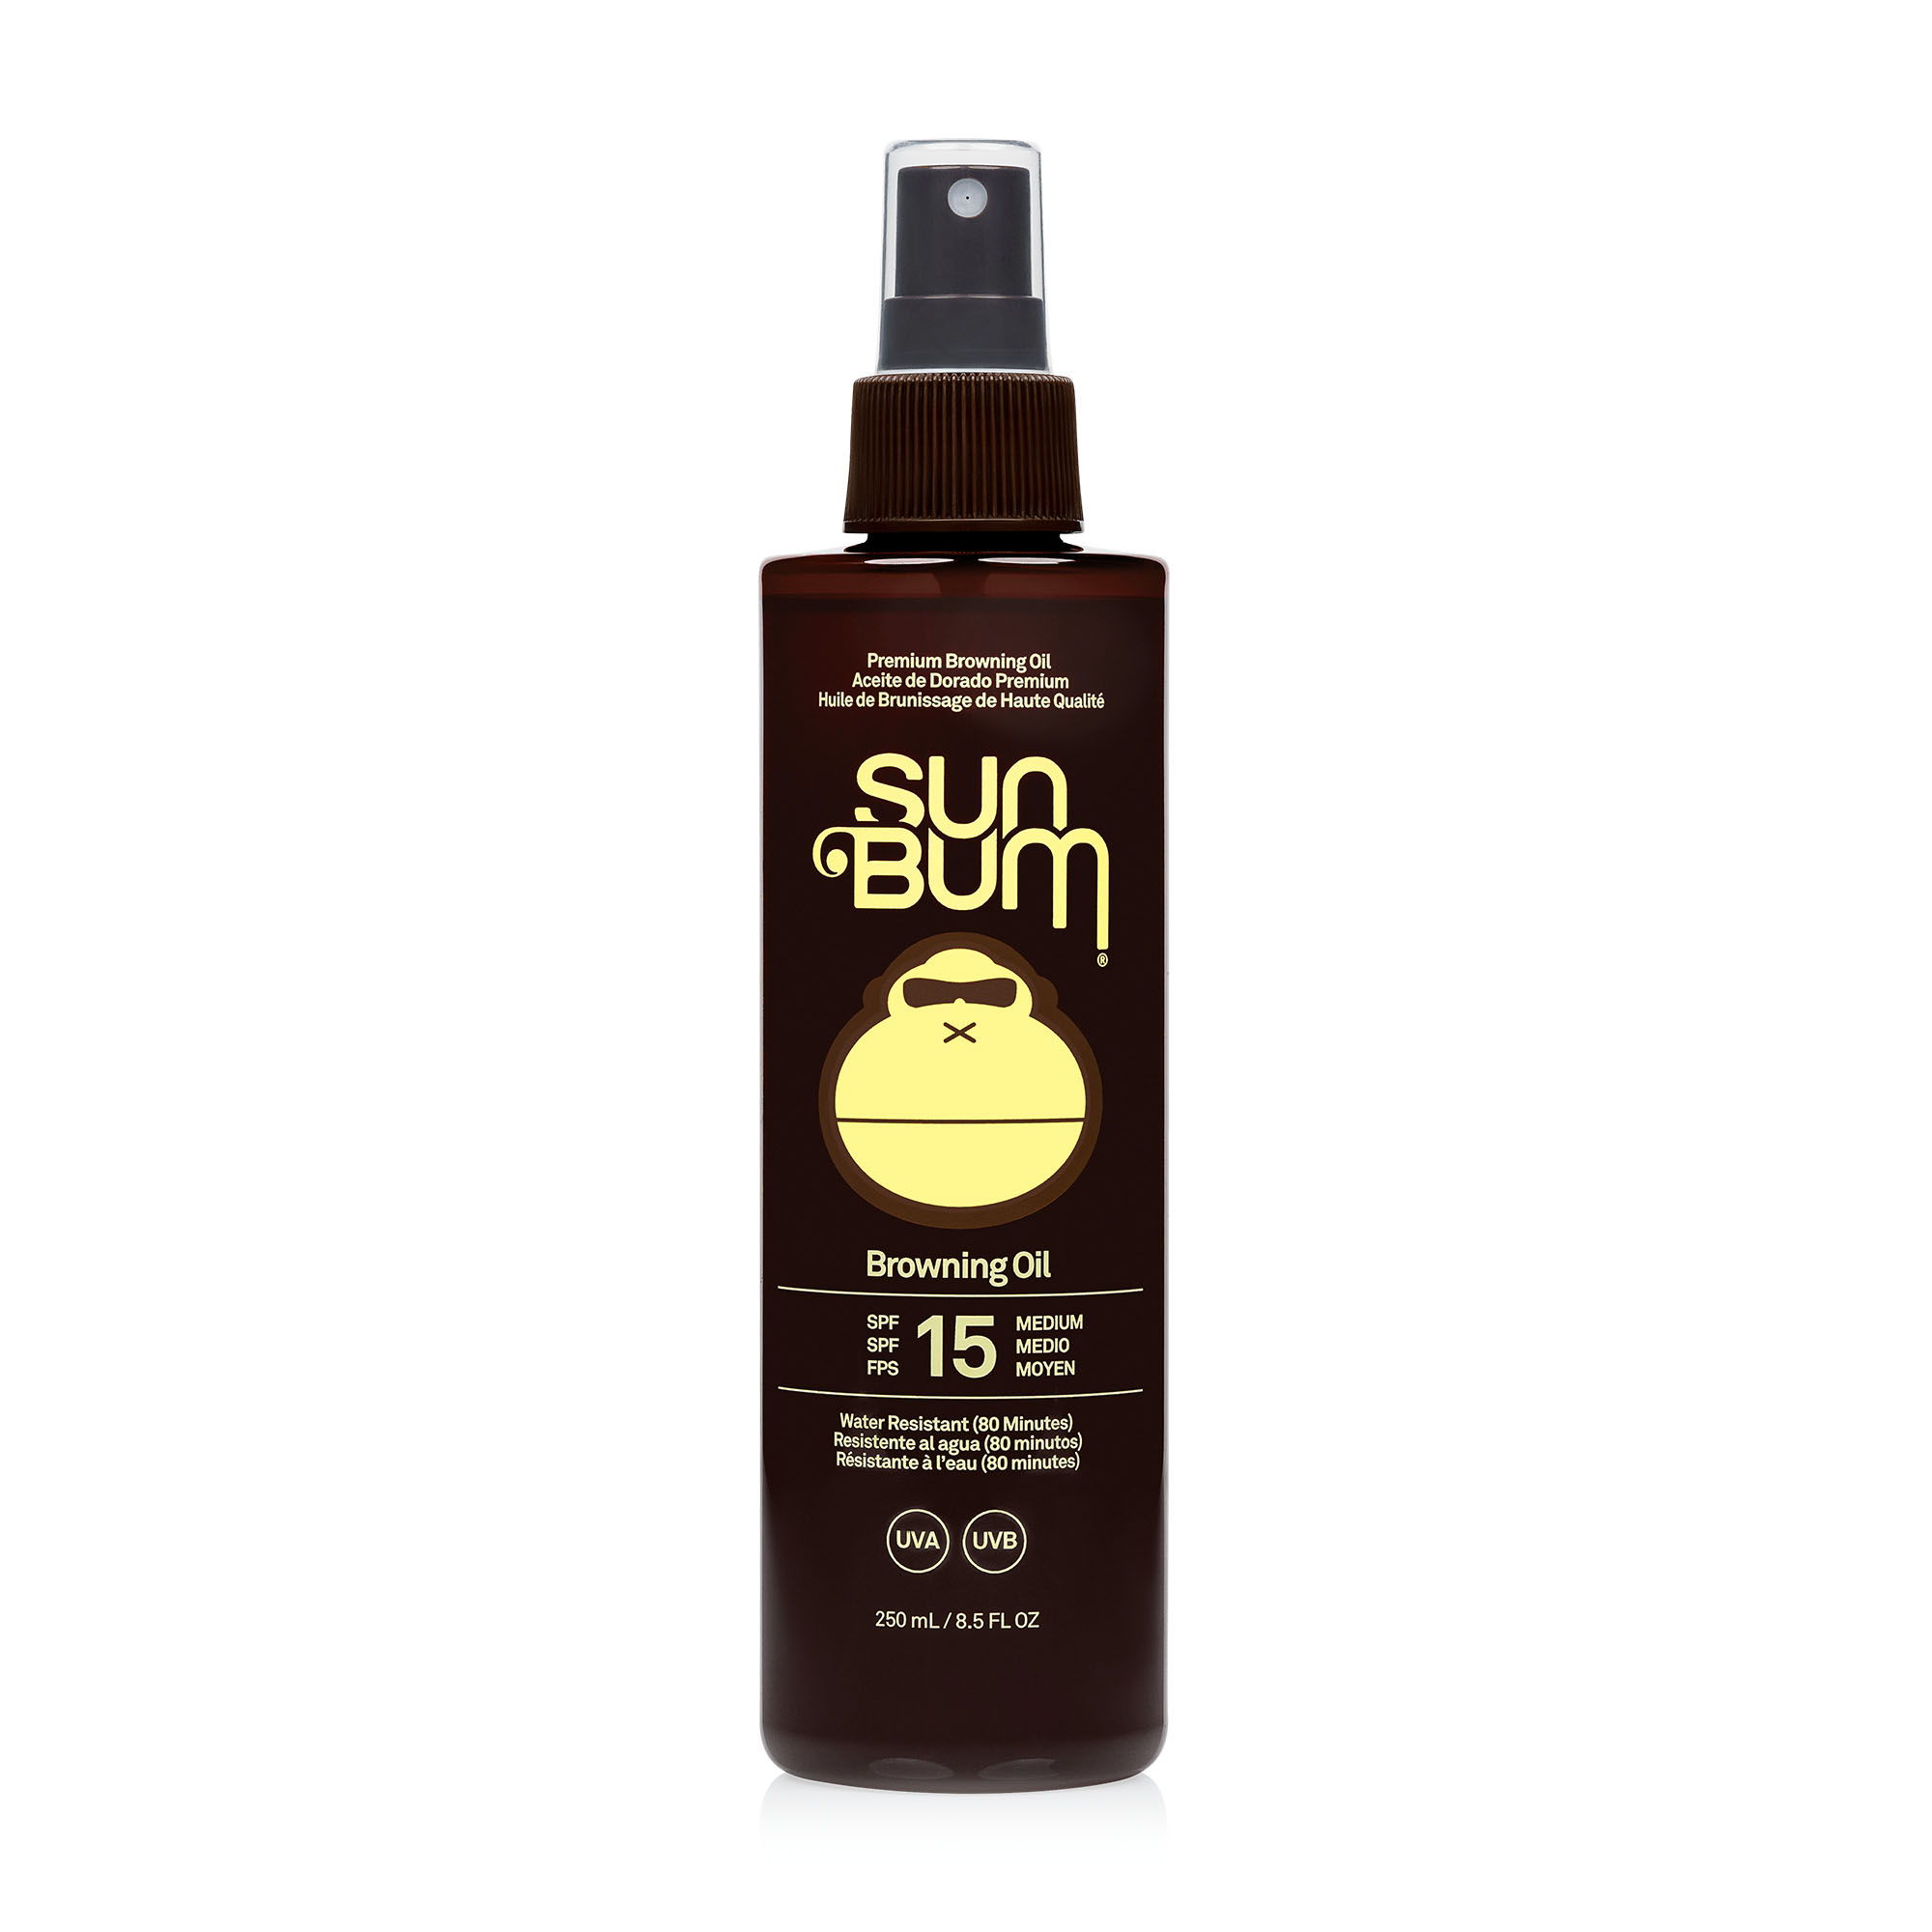 SUNBUM SPF 15 Tanning Oil